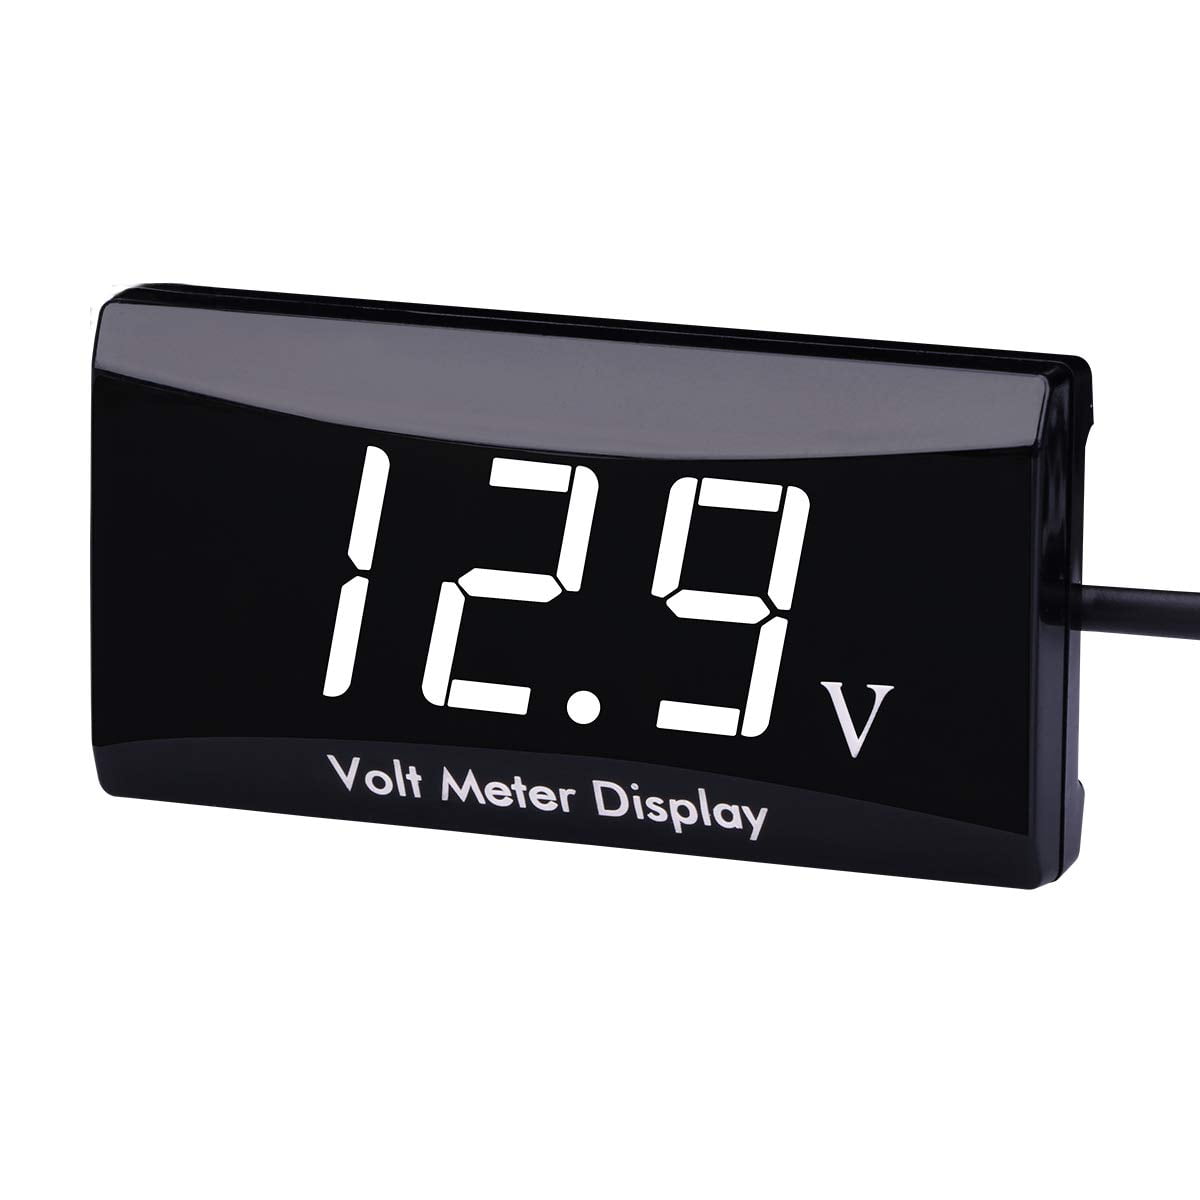 DC 12V Car Motorcycle LED Panel Digital Voltage Meter Gauge Display Voltmeter 